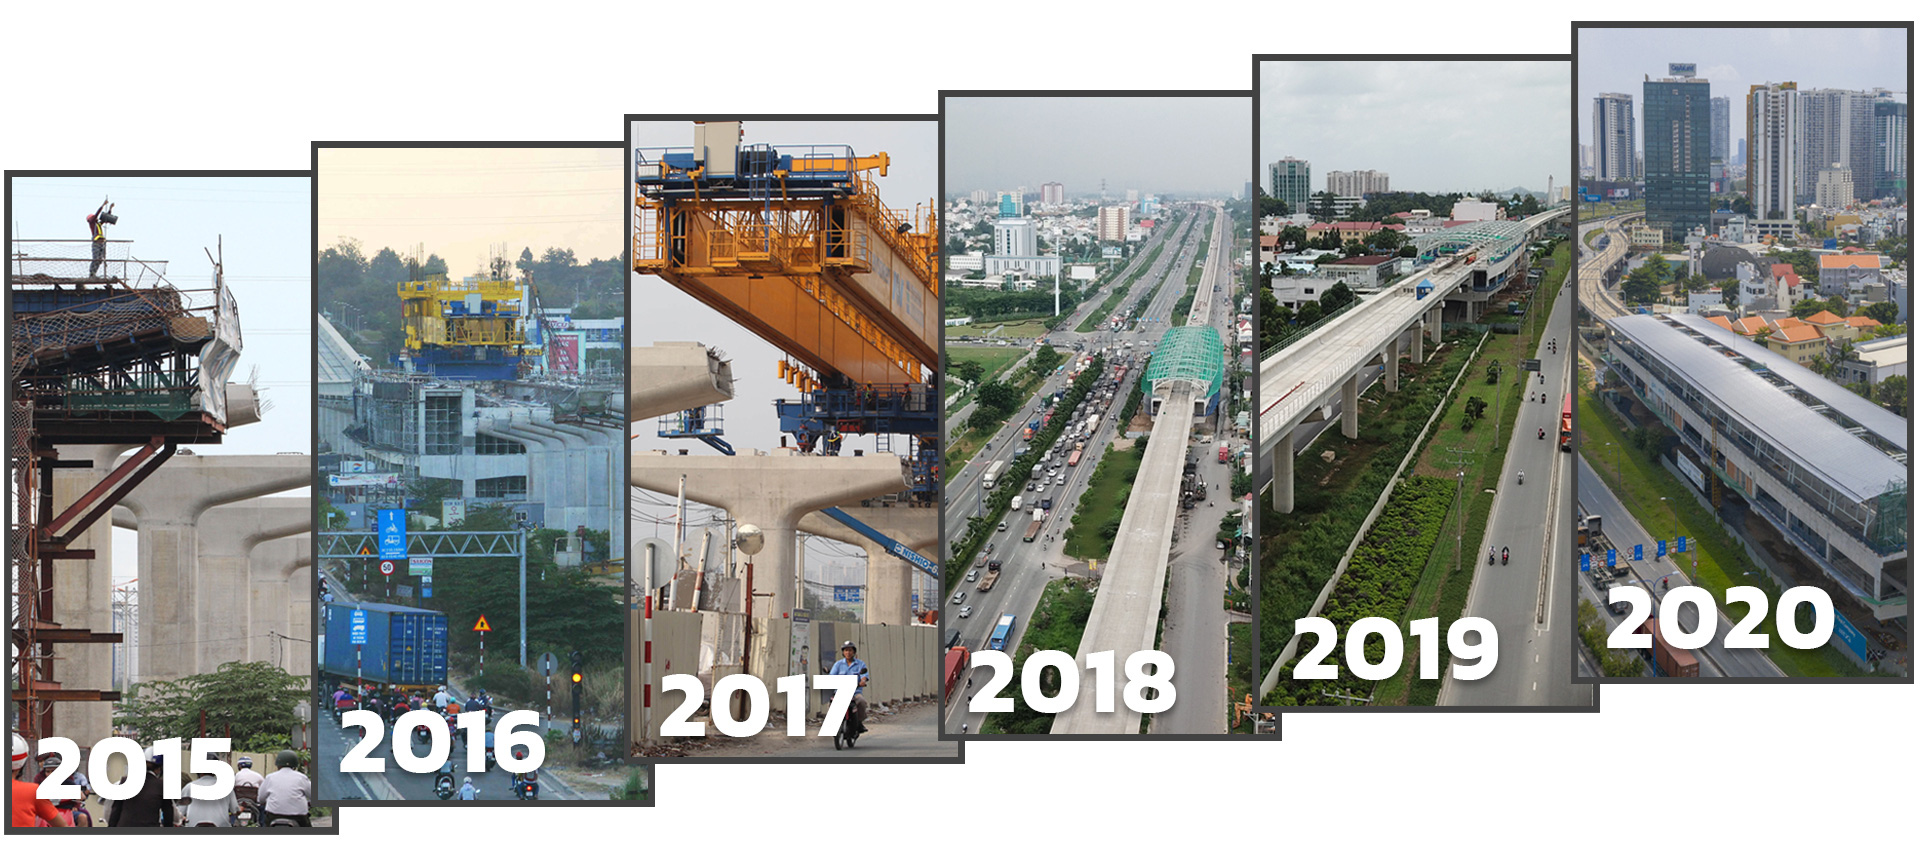 Tiến độ thi công tuyến metro Bến Thành - Suối Tiên qua các năm